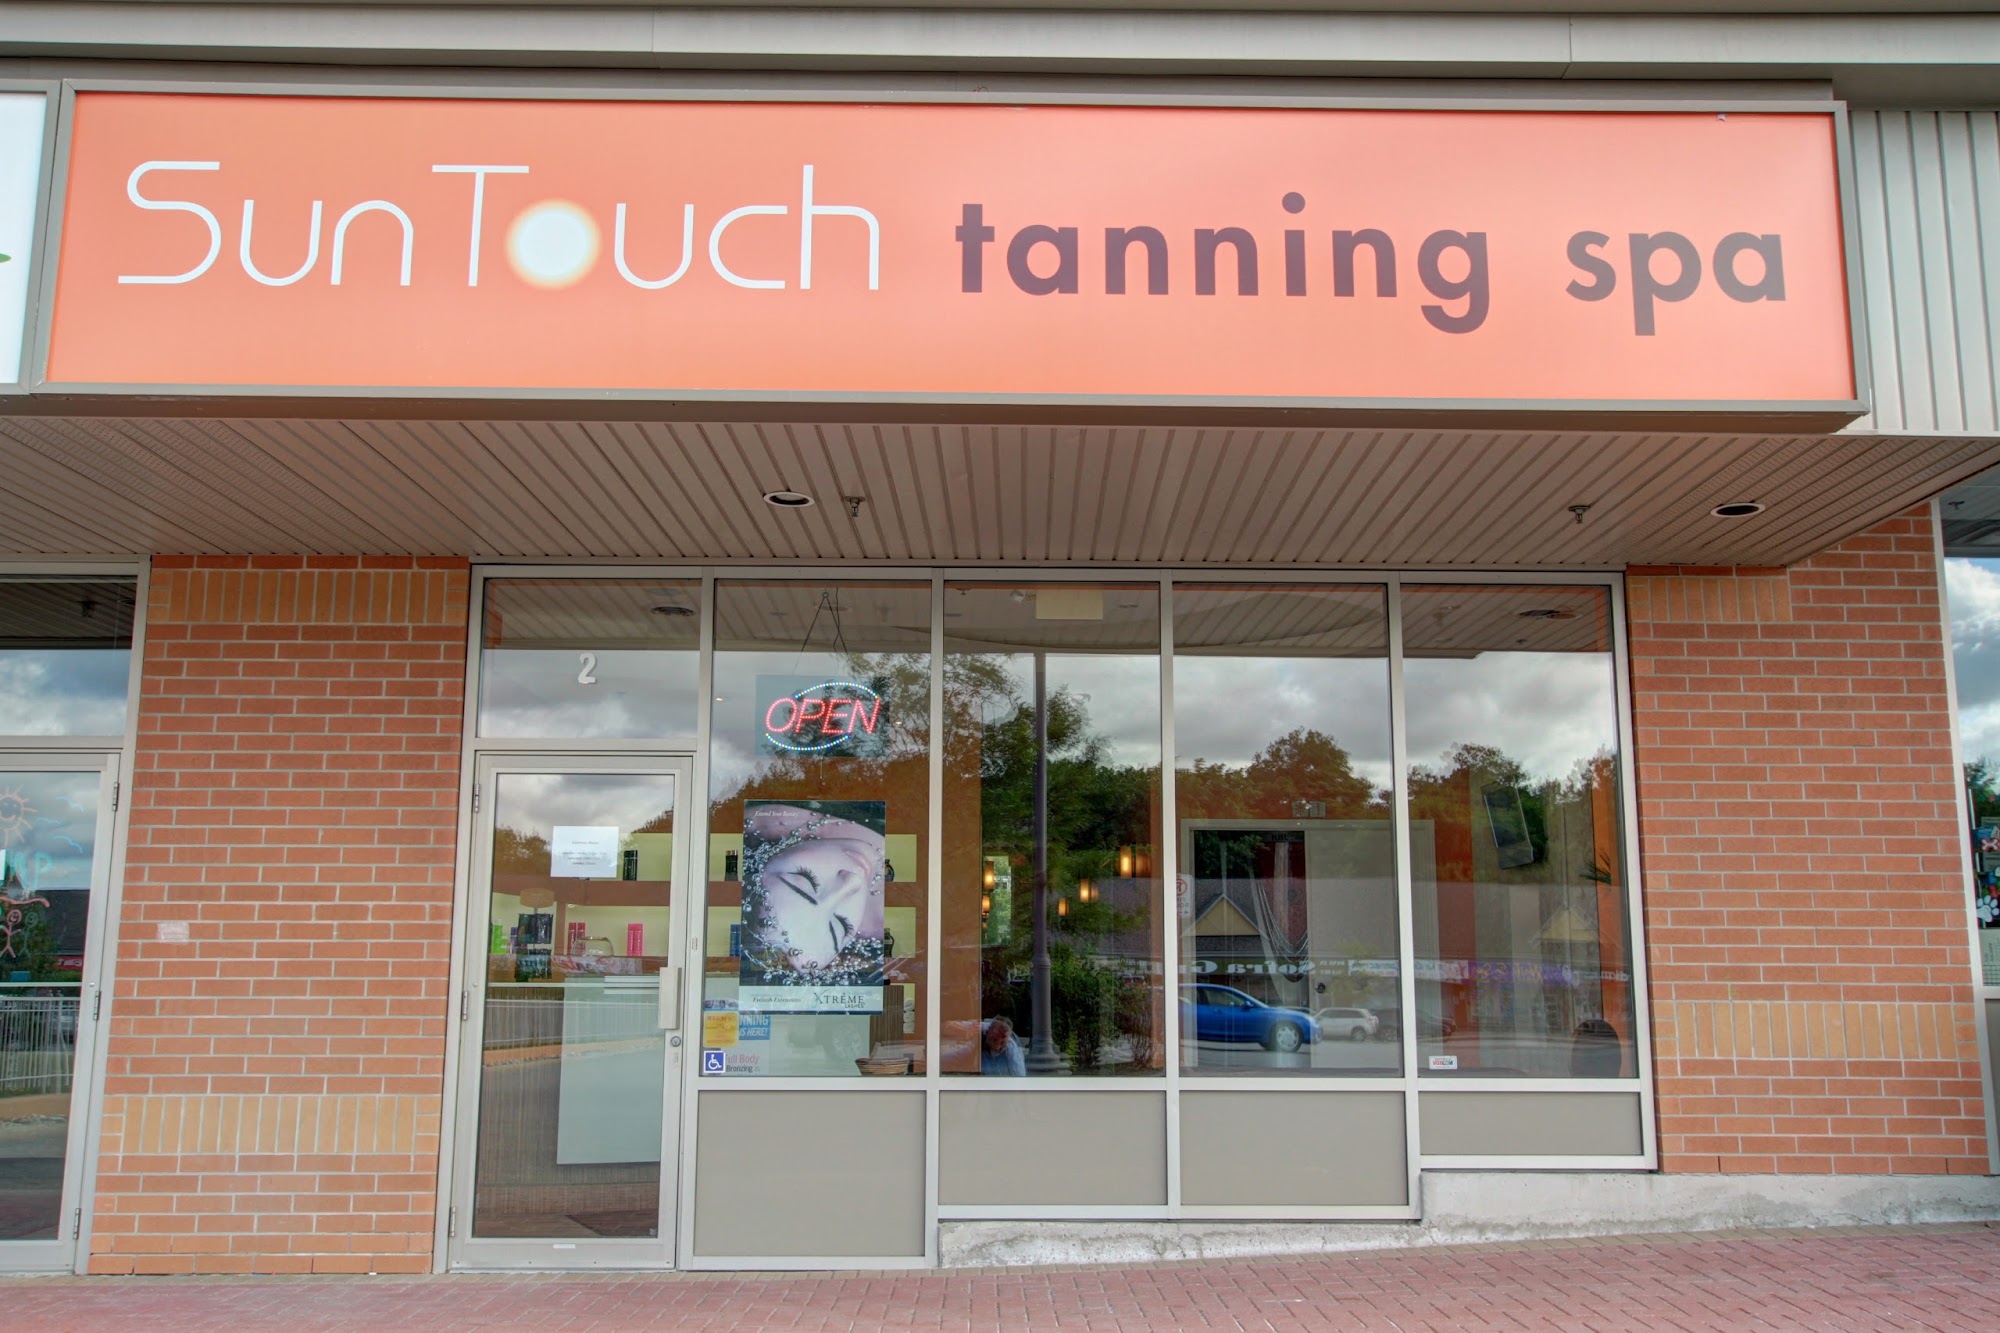 SunTouch Tanning Spa